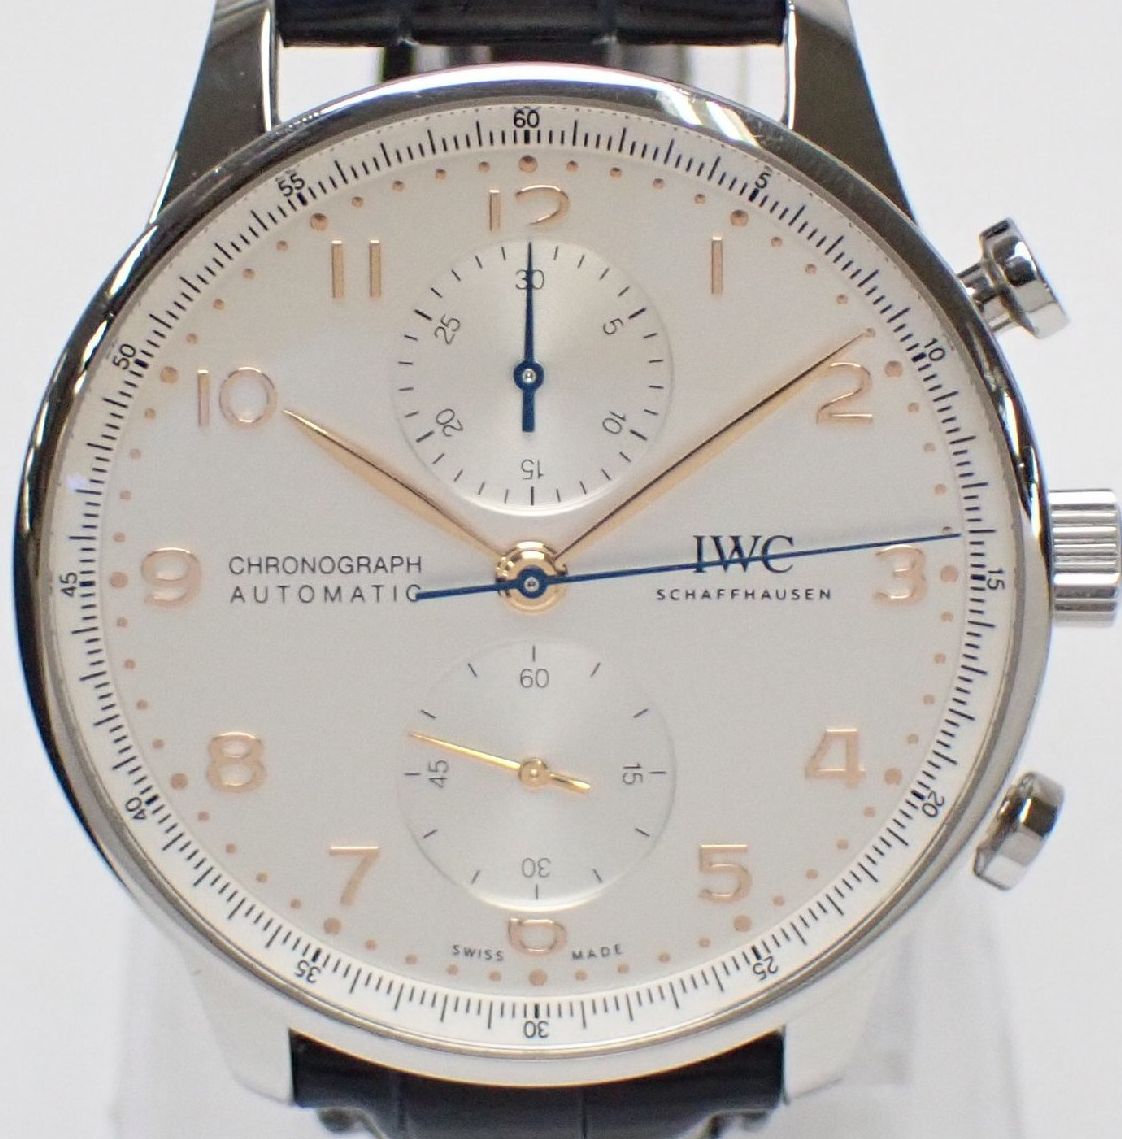 IWC ポルトギーゼ クロノグラフ 自動巻き腕時計 IW371604